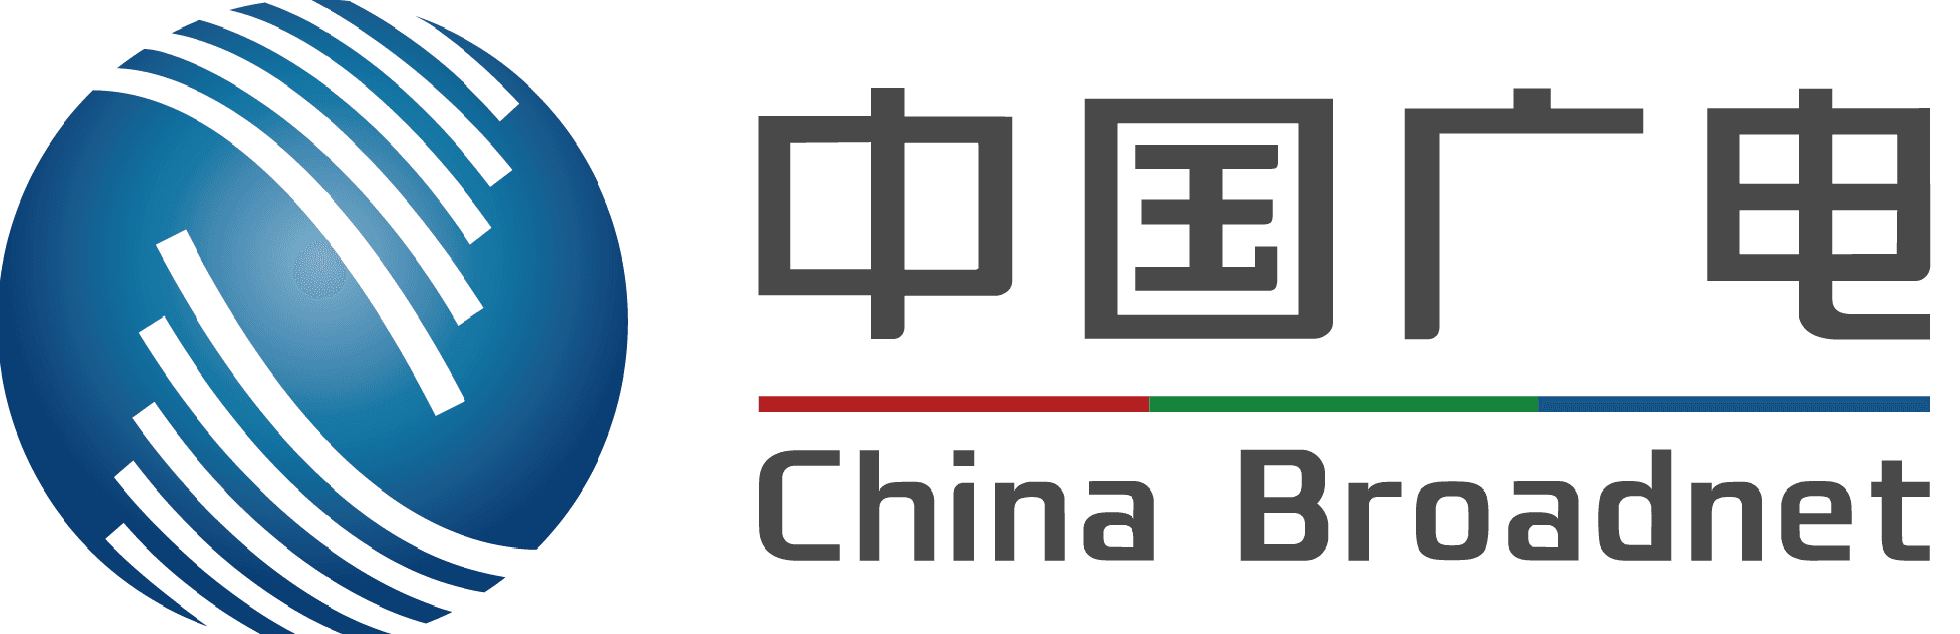 china broadnet